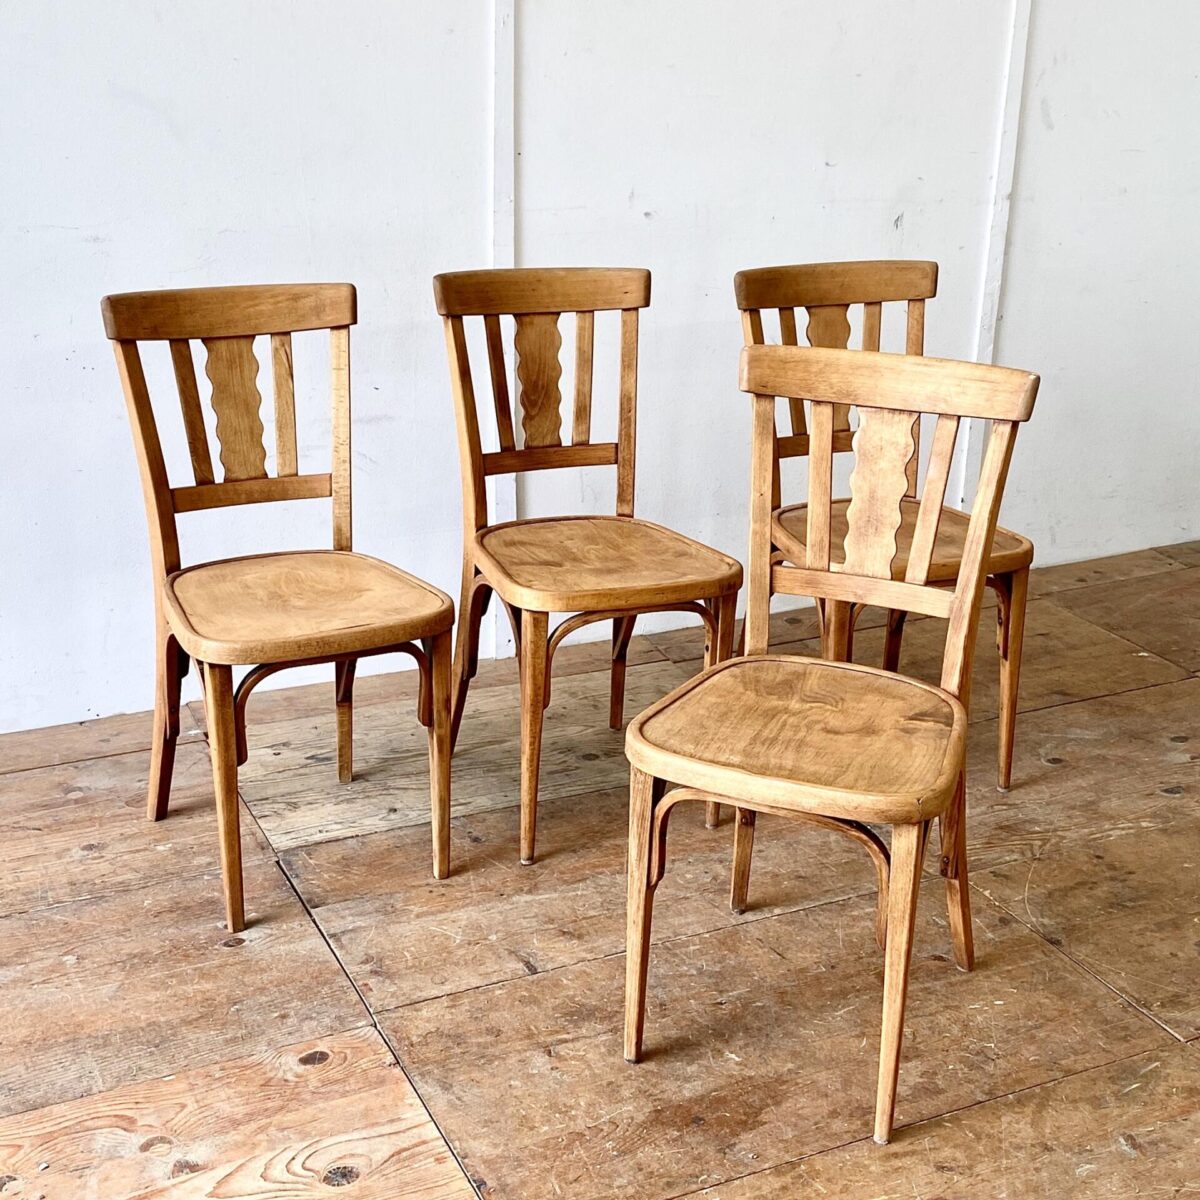 4er Set Bistrostühle von horgenglarus. Diese Stühle wurden mal geschliffen und geölt. Sie haben eine schöne warm-matte Farbe, und trotzdem noch etwas Alterspatina. Technisch sind sie in stabilem funktionalen Zustand.